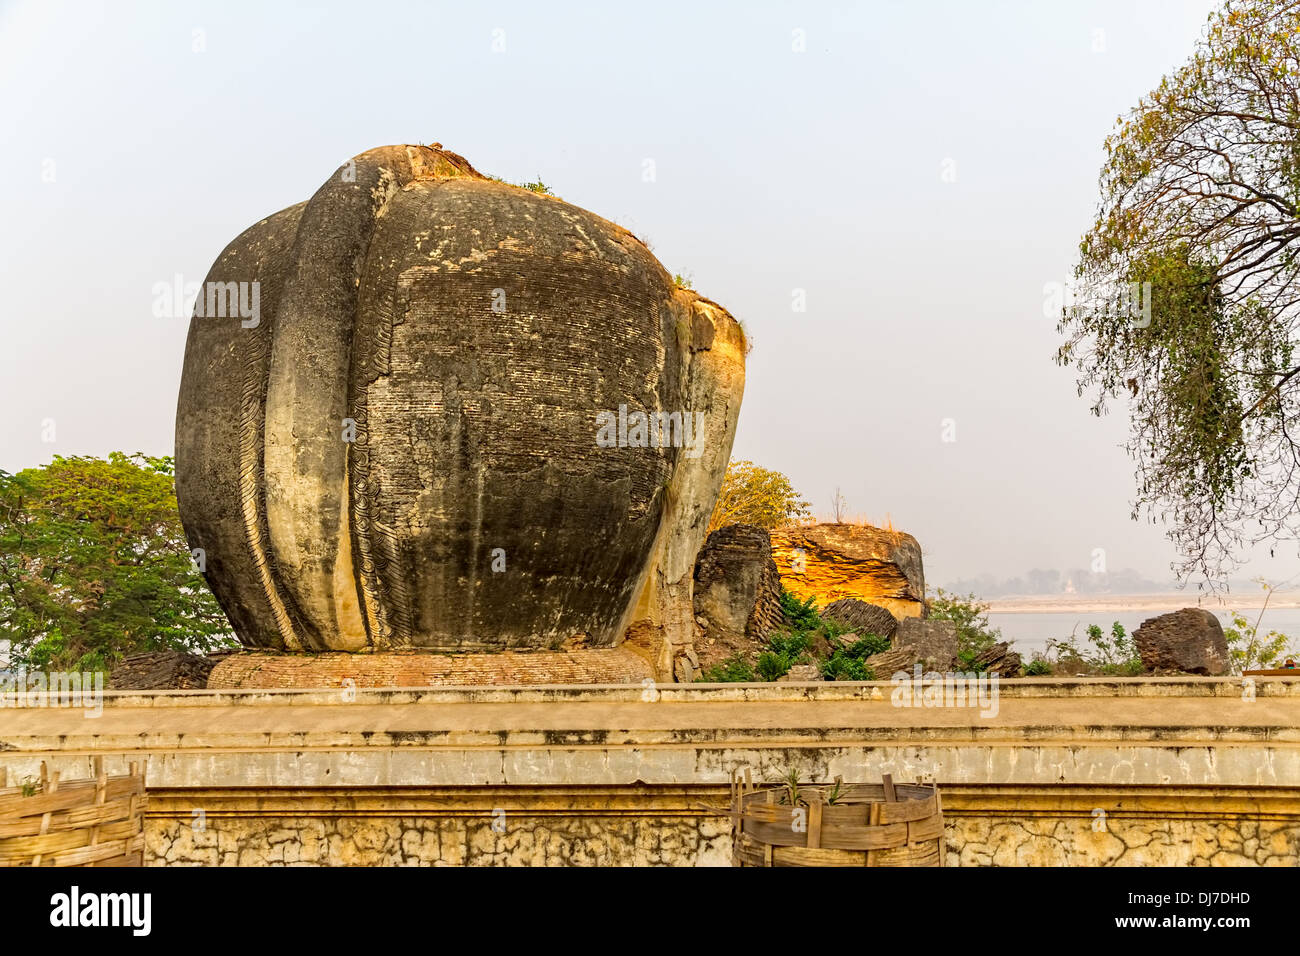 Près de Mandalay Mingun est une attraction touristique - sculpture de l'éléphant jamais achevé Pagoda Banque D'Images